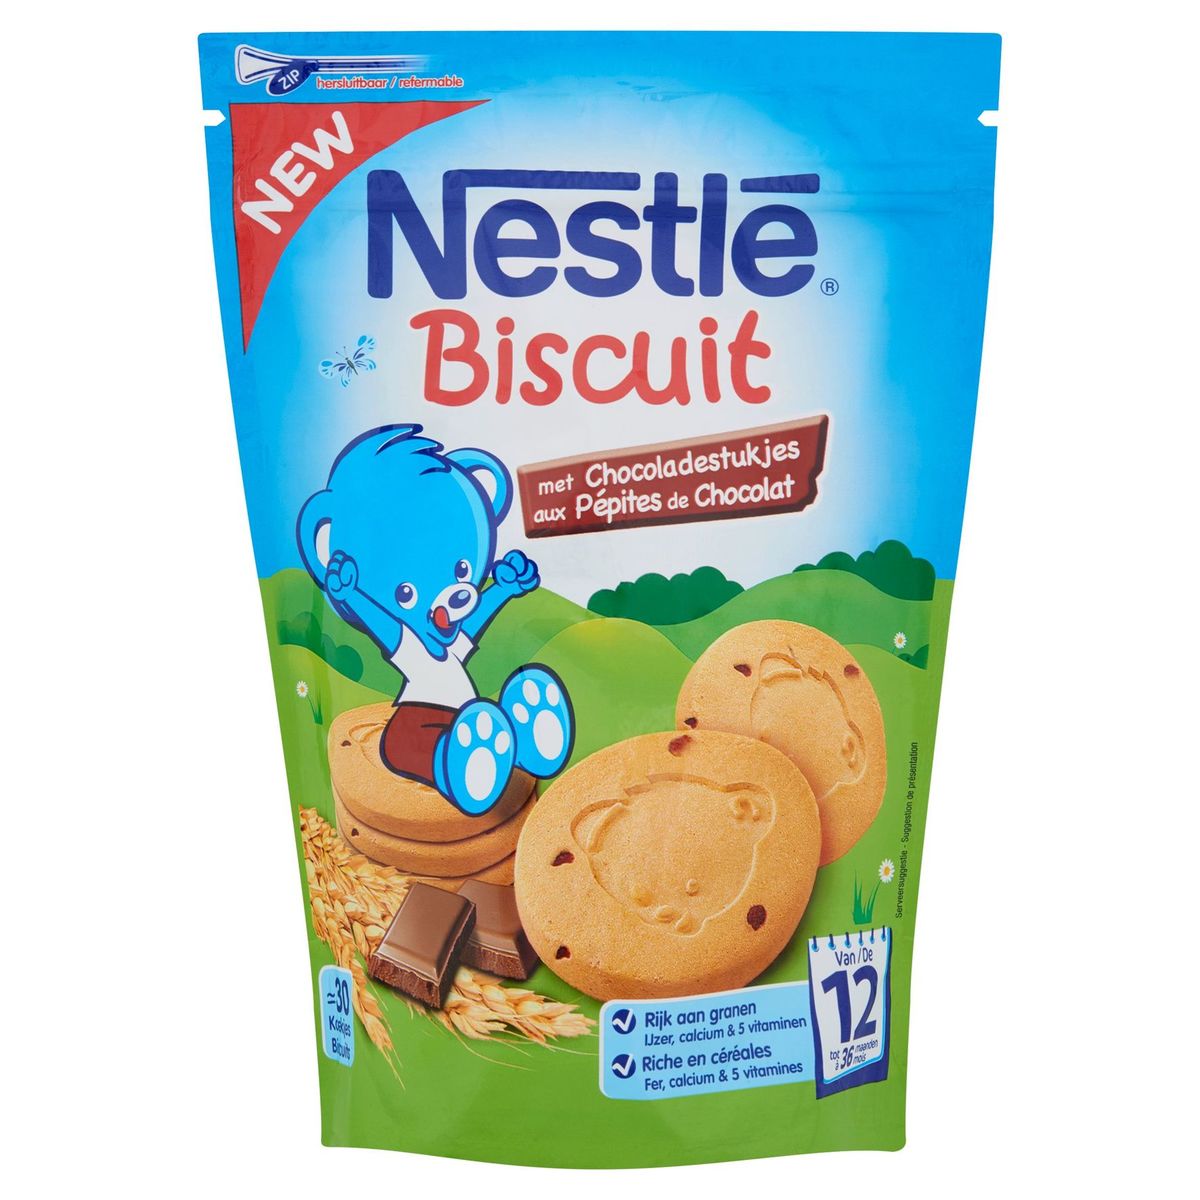 Nestlé Baby Biscuit Koekje met Chocoladestukjes vanaf 12 maanden 150g